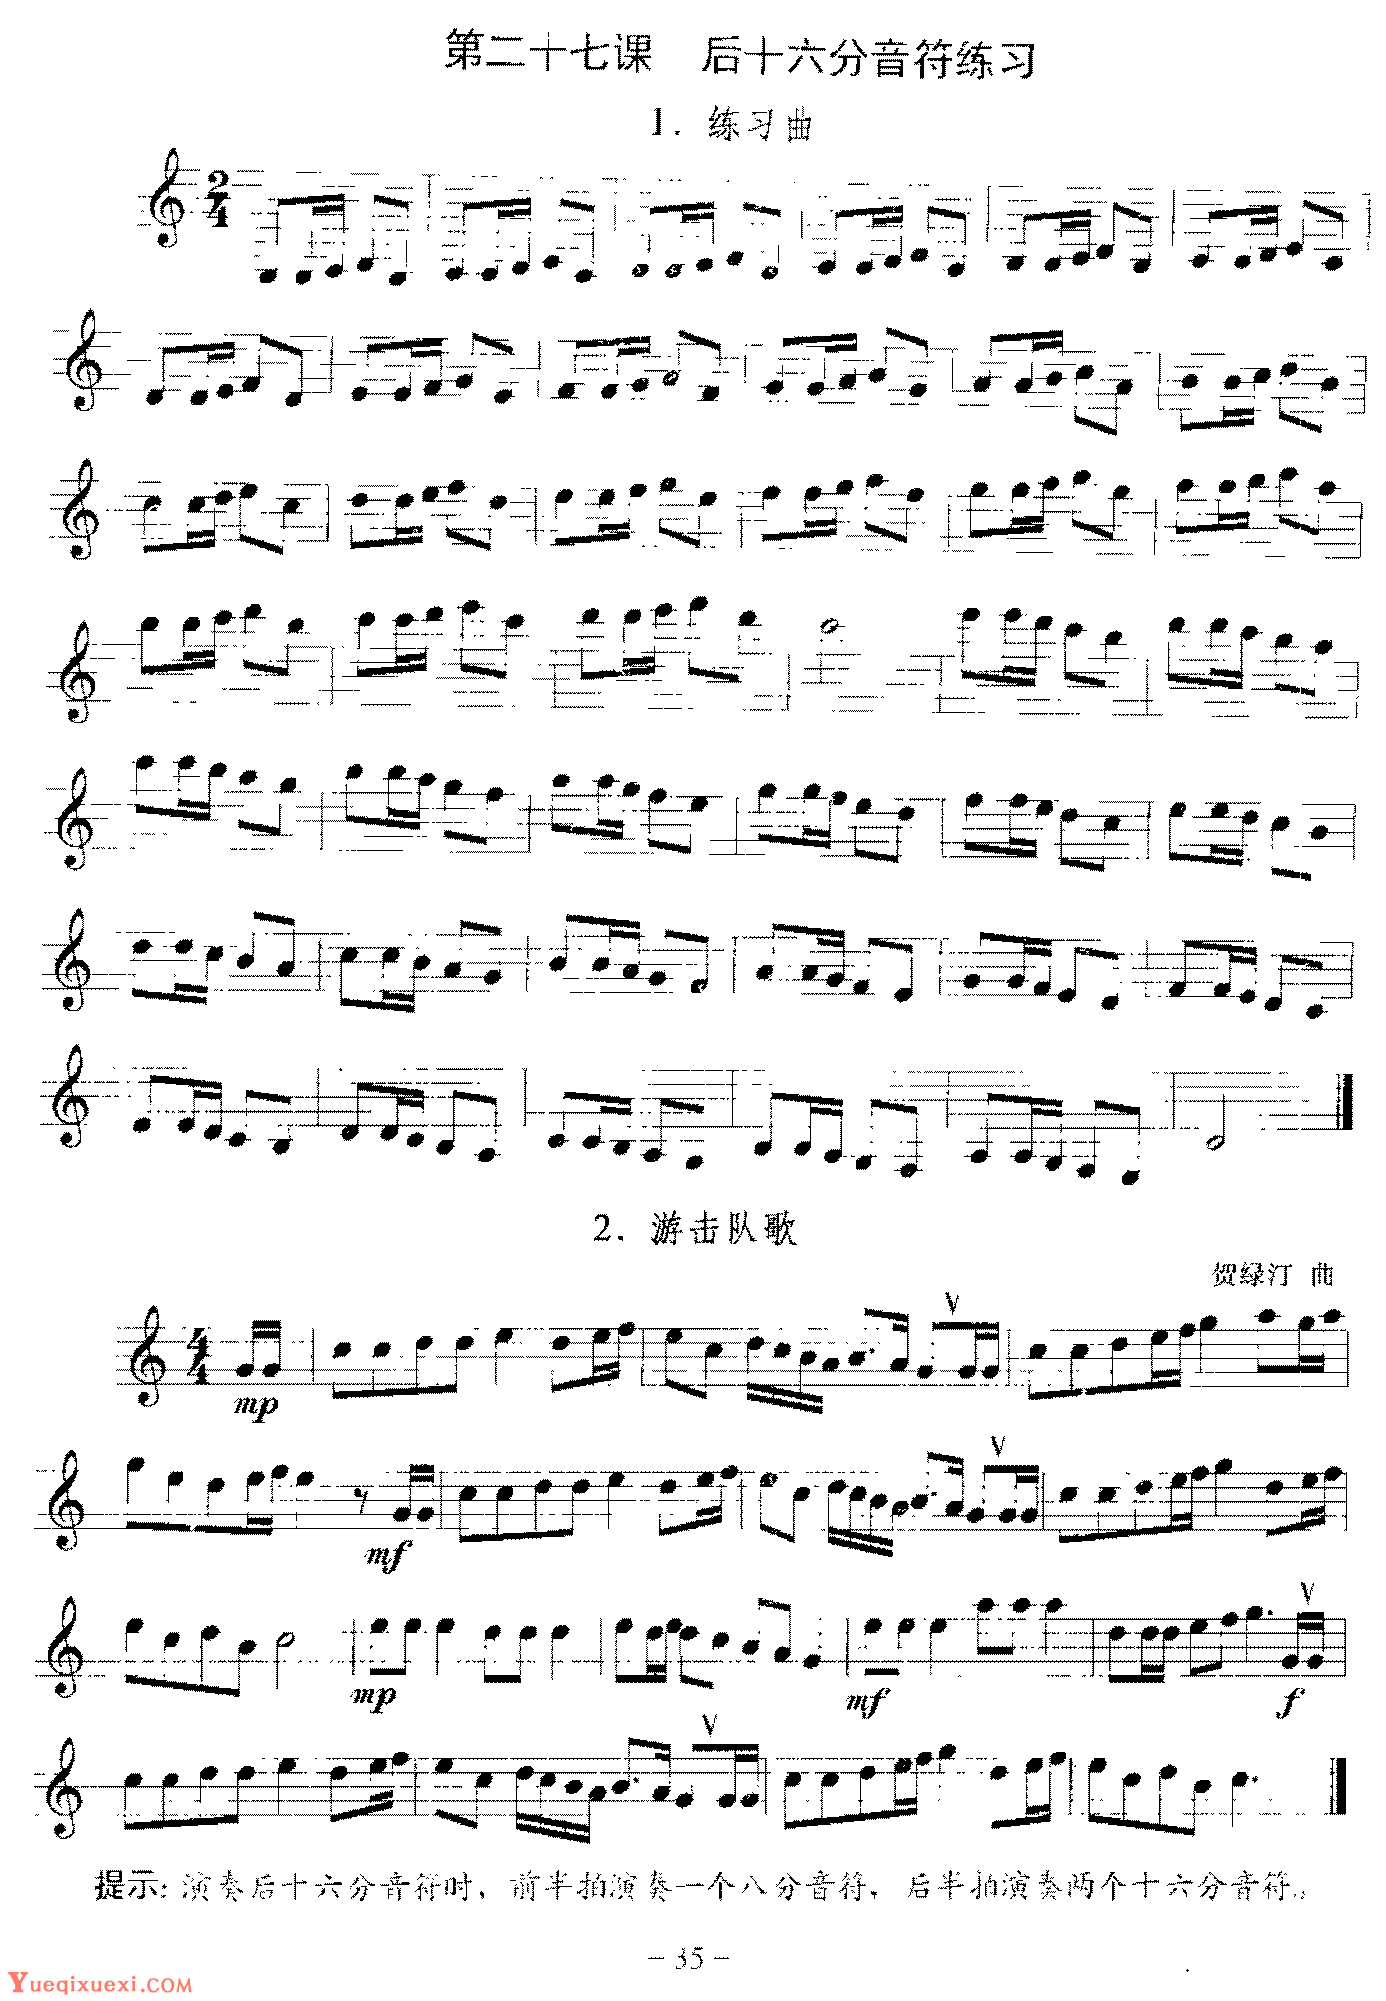 单簧管后十六分音符练习曲《游击队歌》